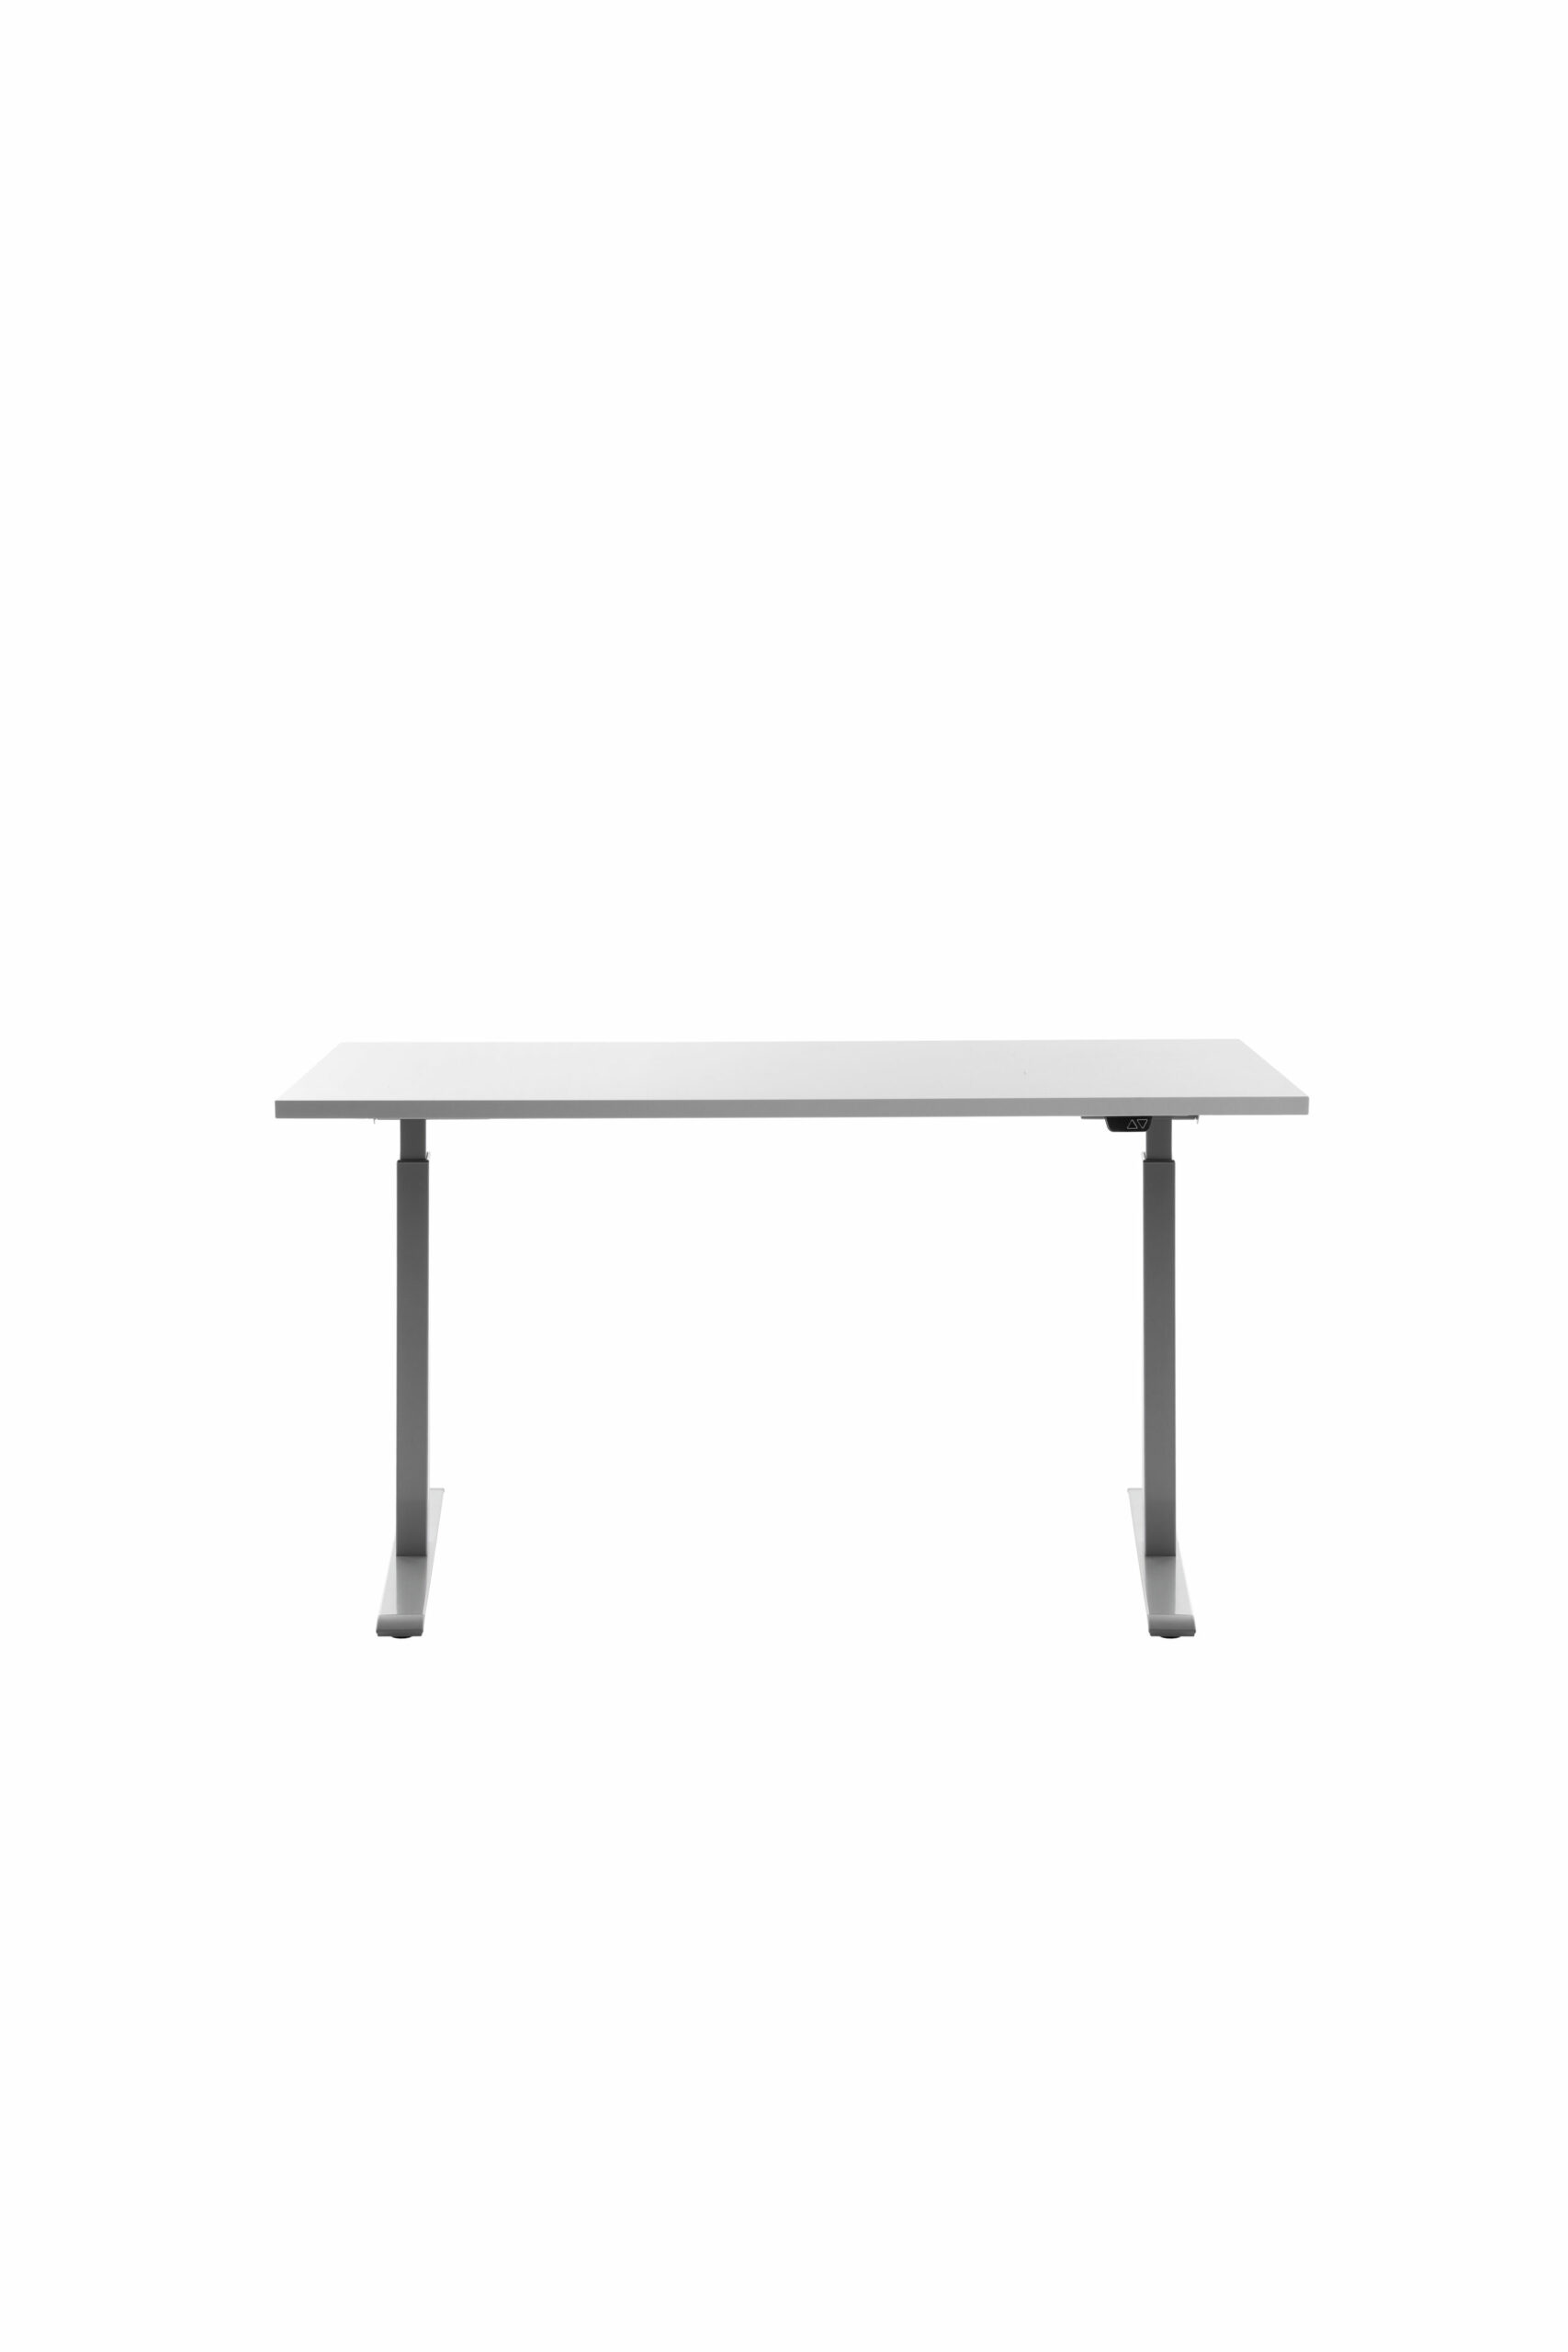 Höhenverstellbarer Schreibtisch 140x60 cm - Gestell grau - Platte weiss